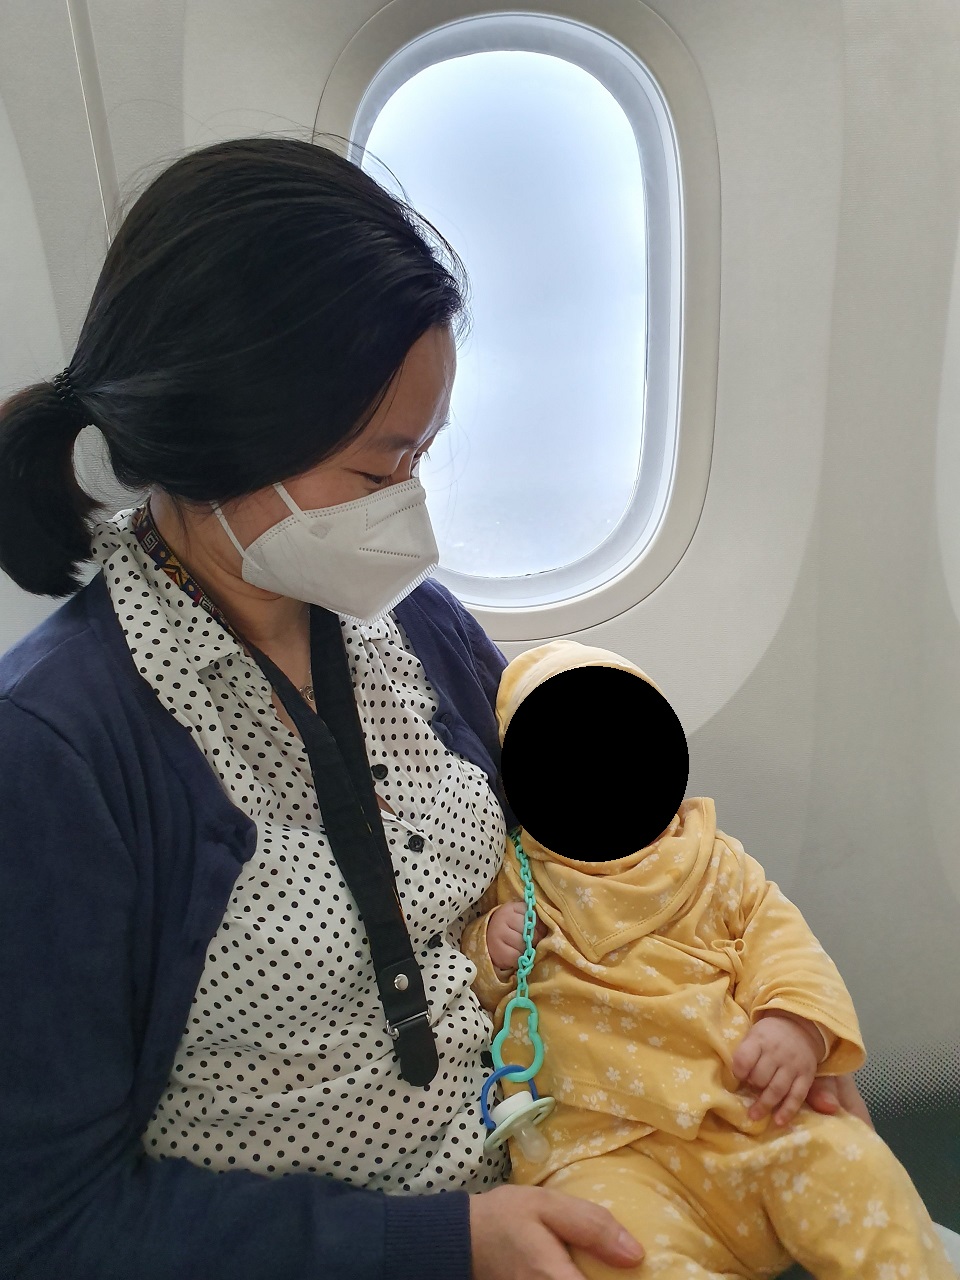 Voyager en avion avec bébé : âge, eau, poussette, documents